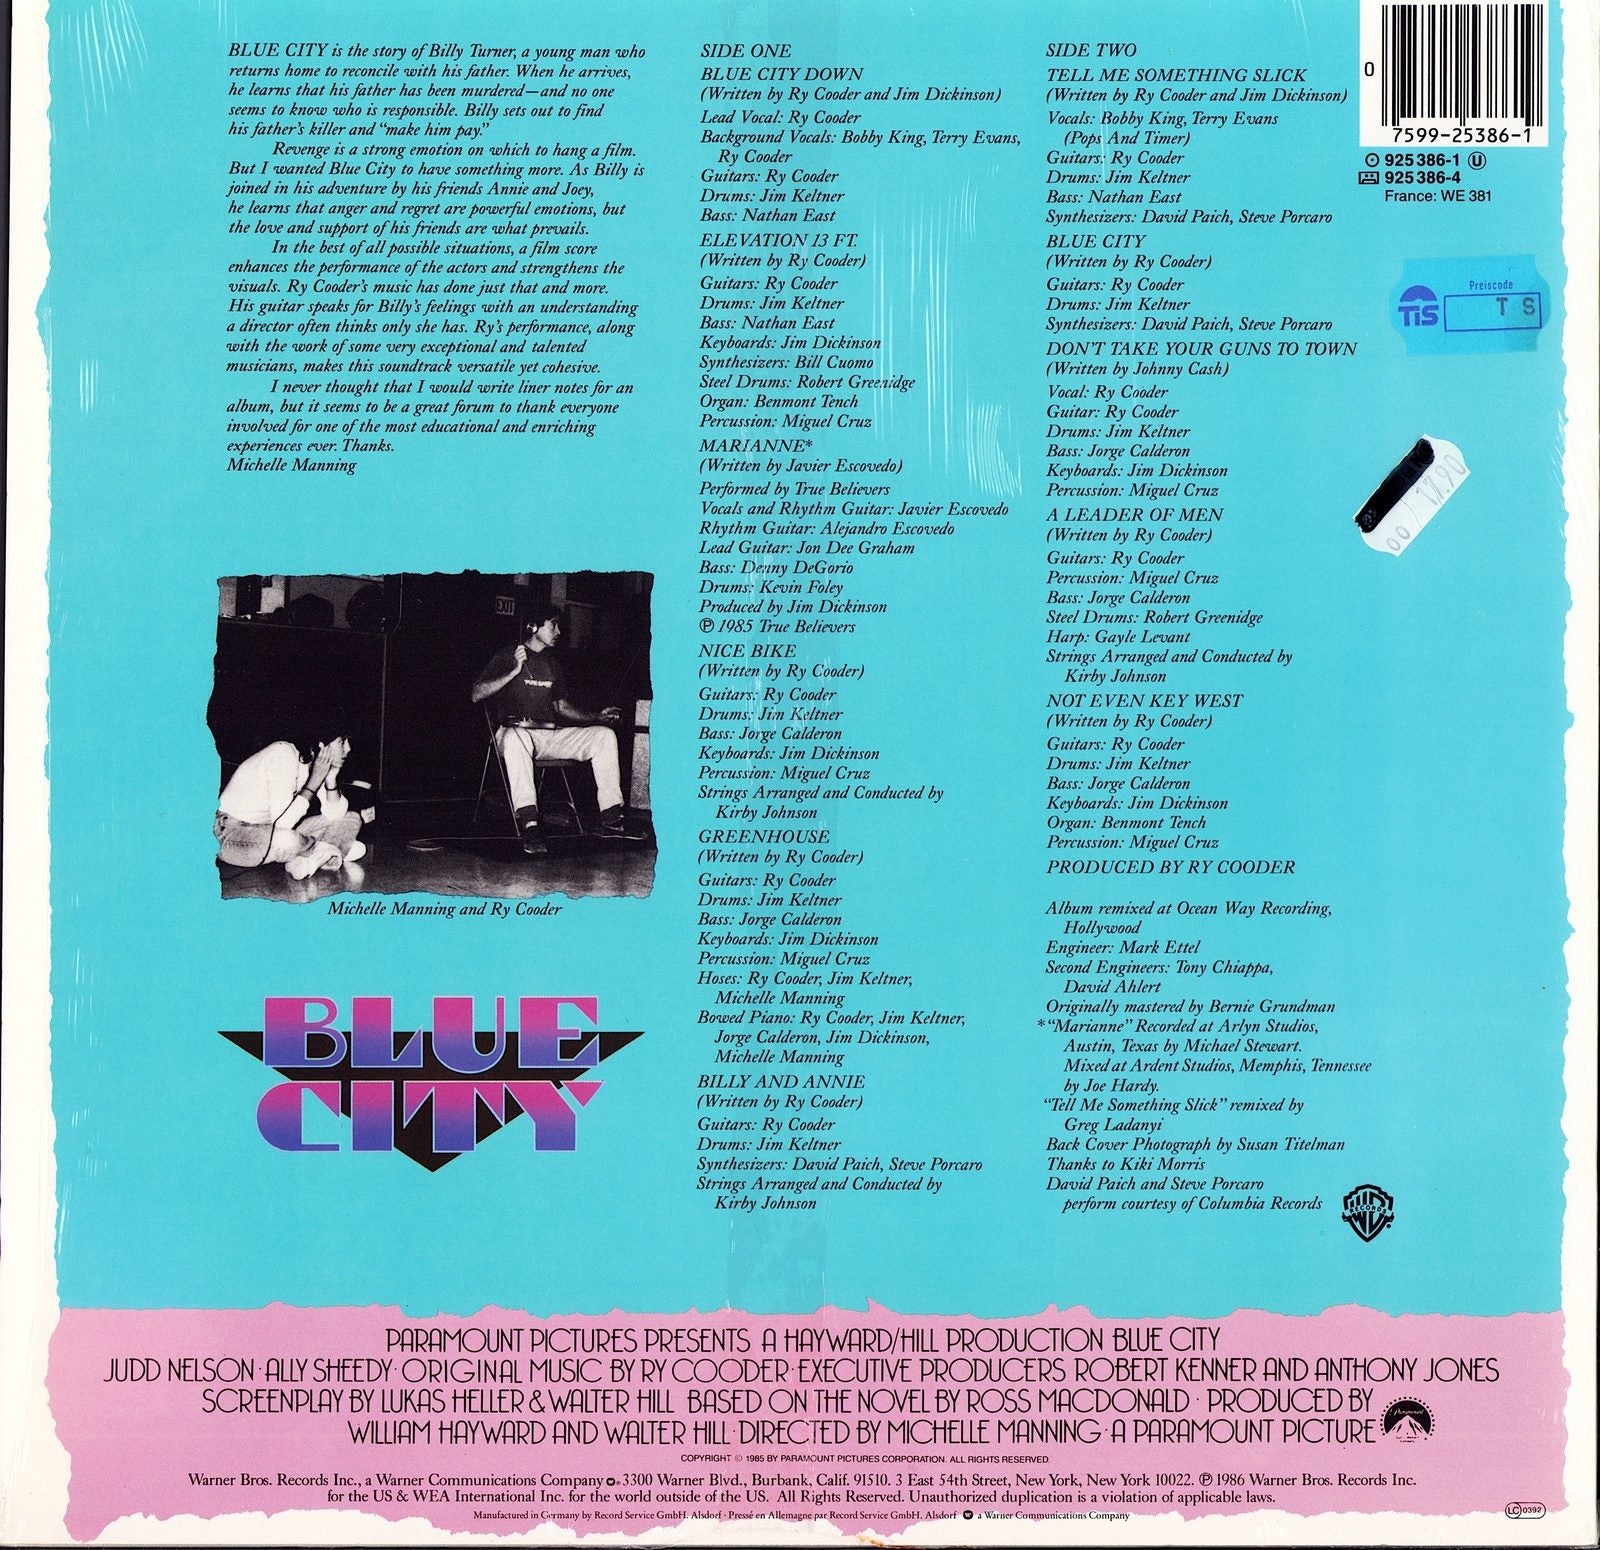 Ry Cooder - Blue City Motion Picture Soundtrack Vinyl LP